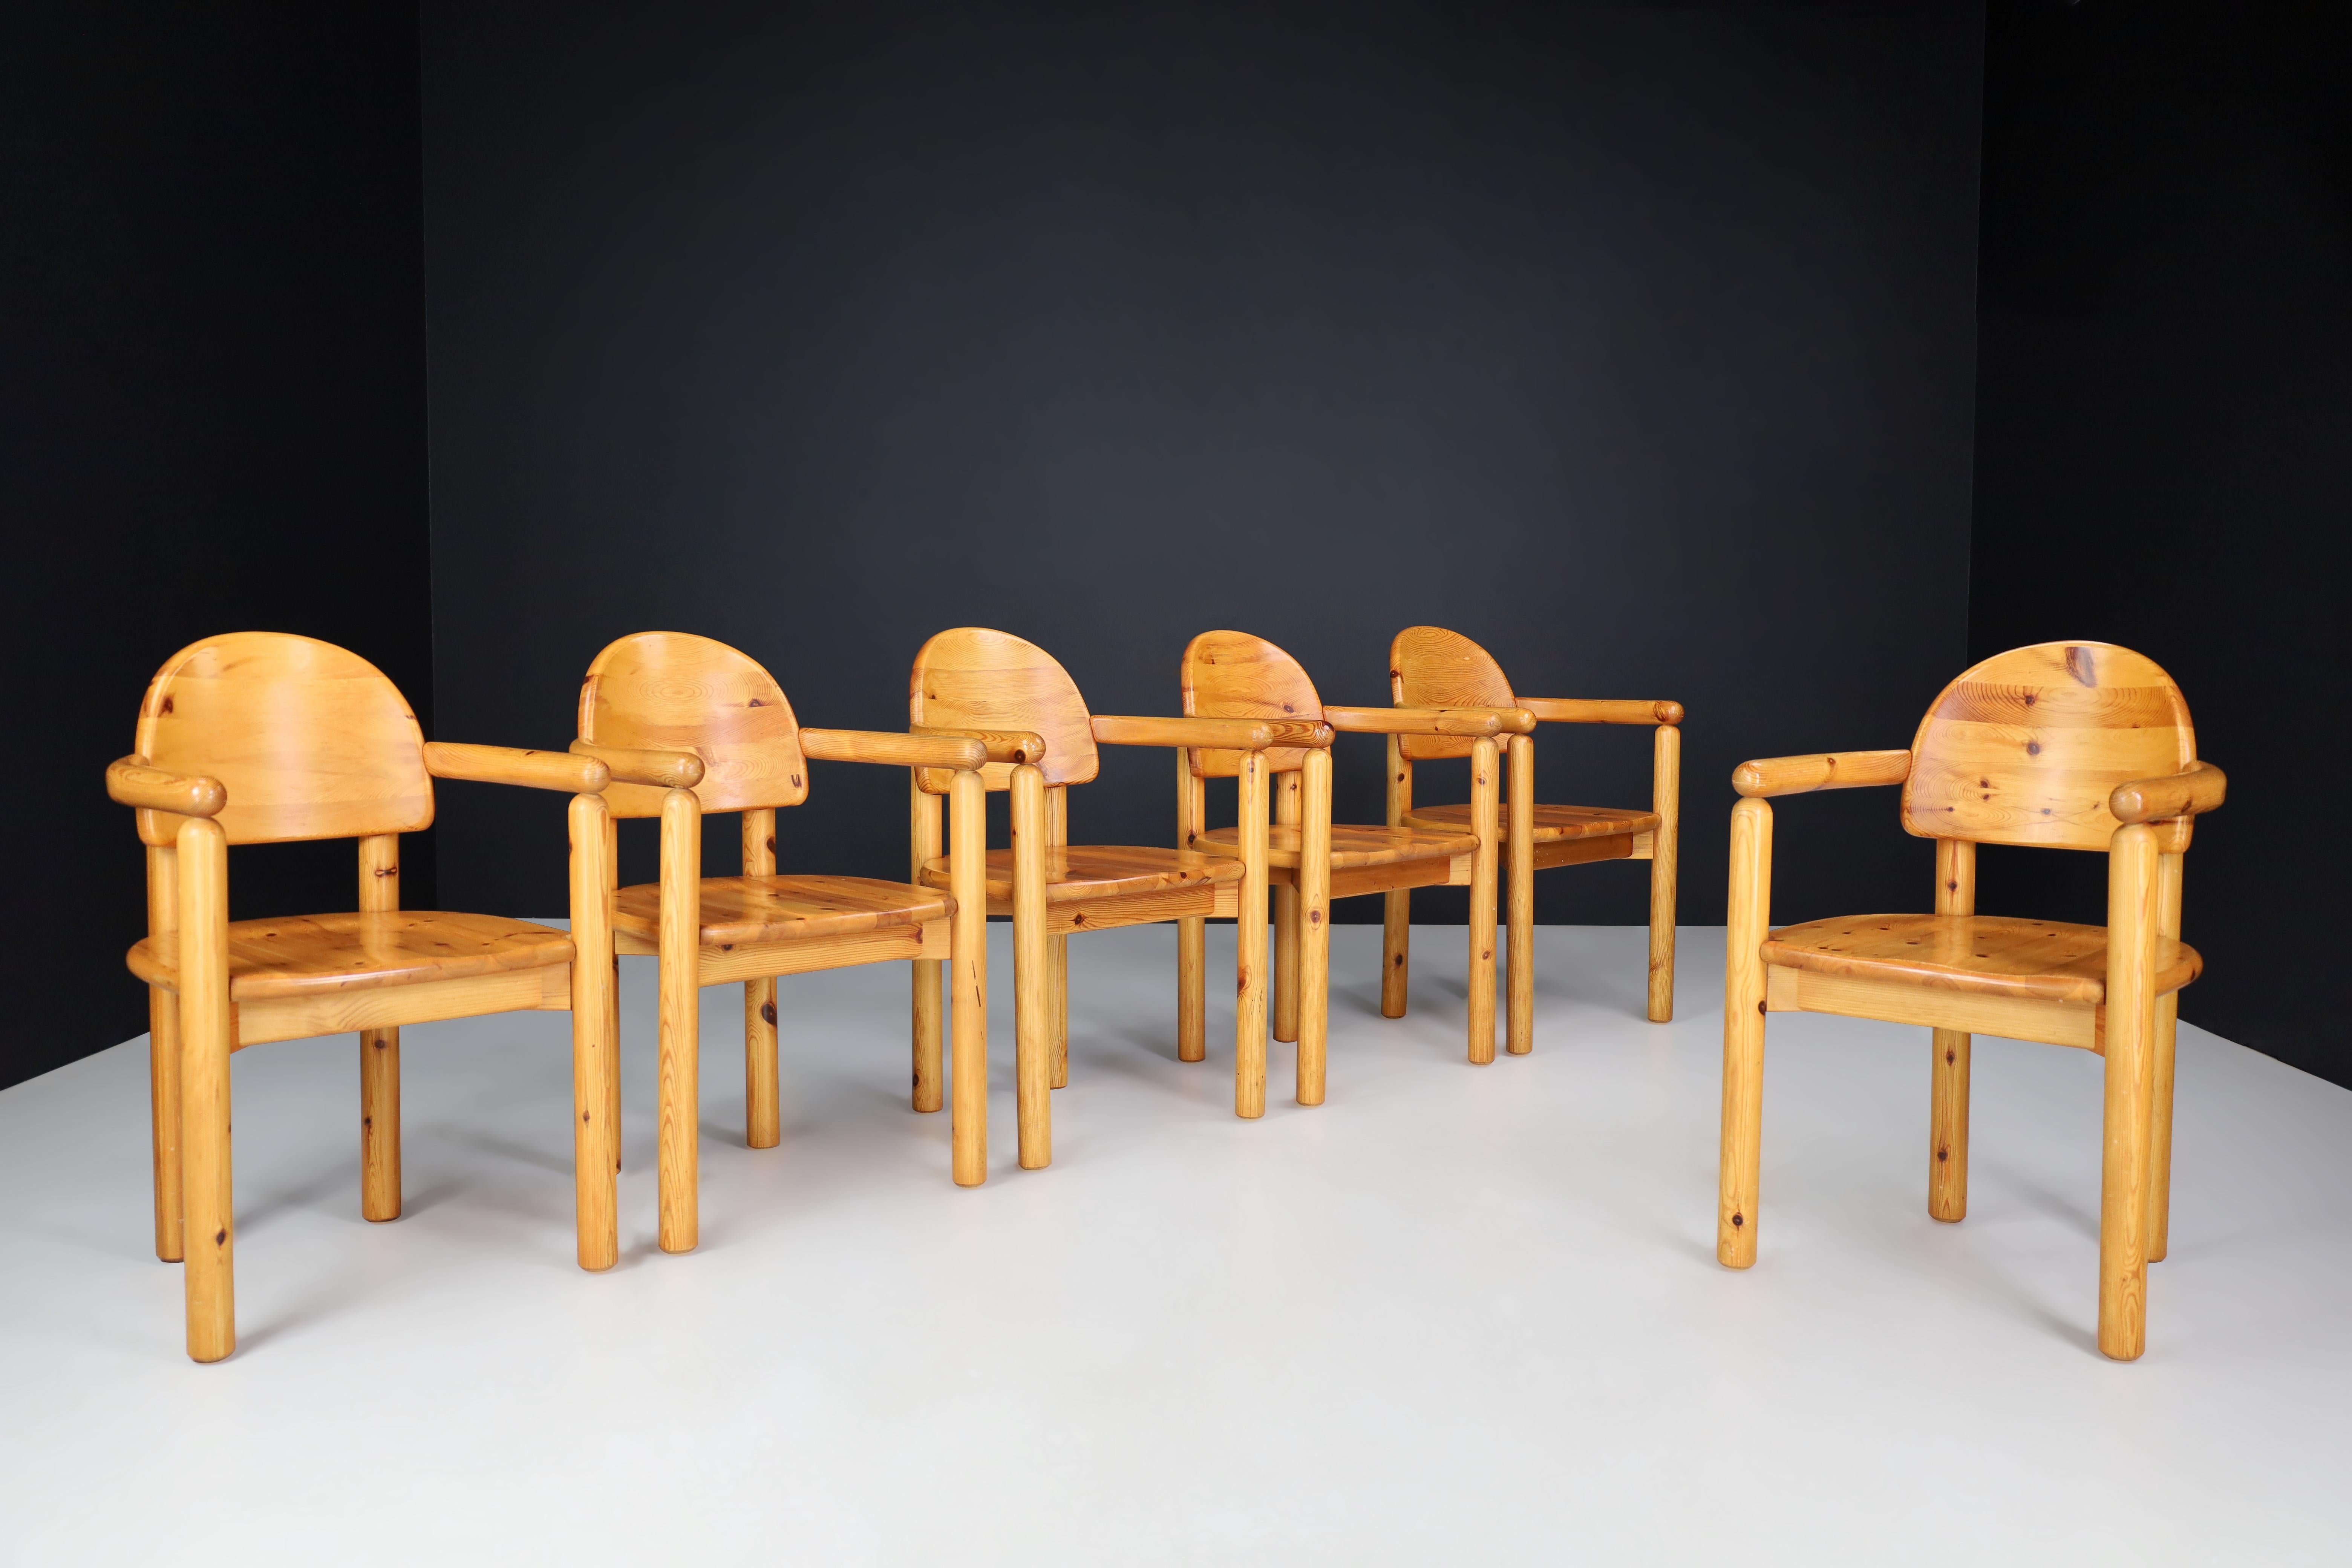 Ensemble de six chaises de salle à manger en pin massif de Rainer Daumiller, années 1970, Danemark.

Cet ensemble de six chaises de salle à manger a été créé par Rainer Daumiller pour la scierie Hirtshals au Danemark dans les années 1970. Fabriquées